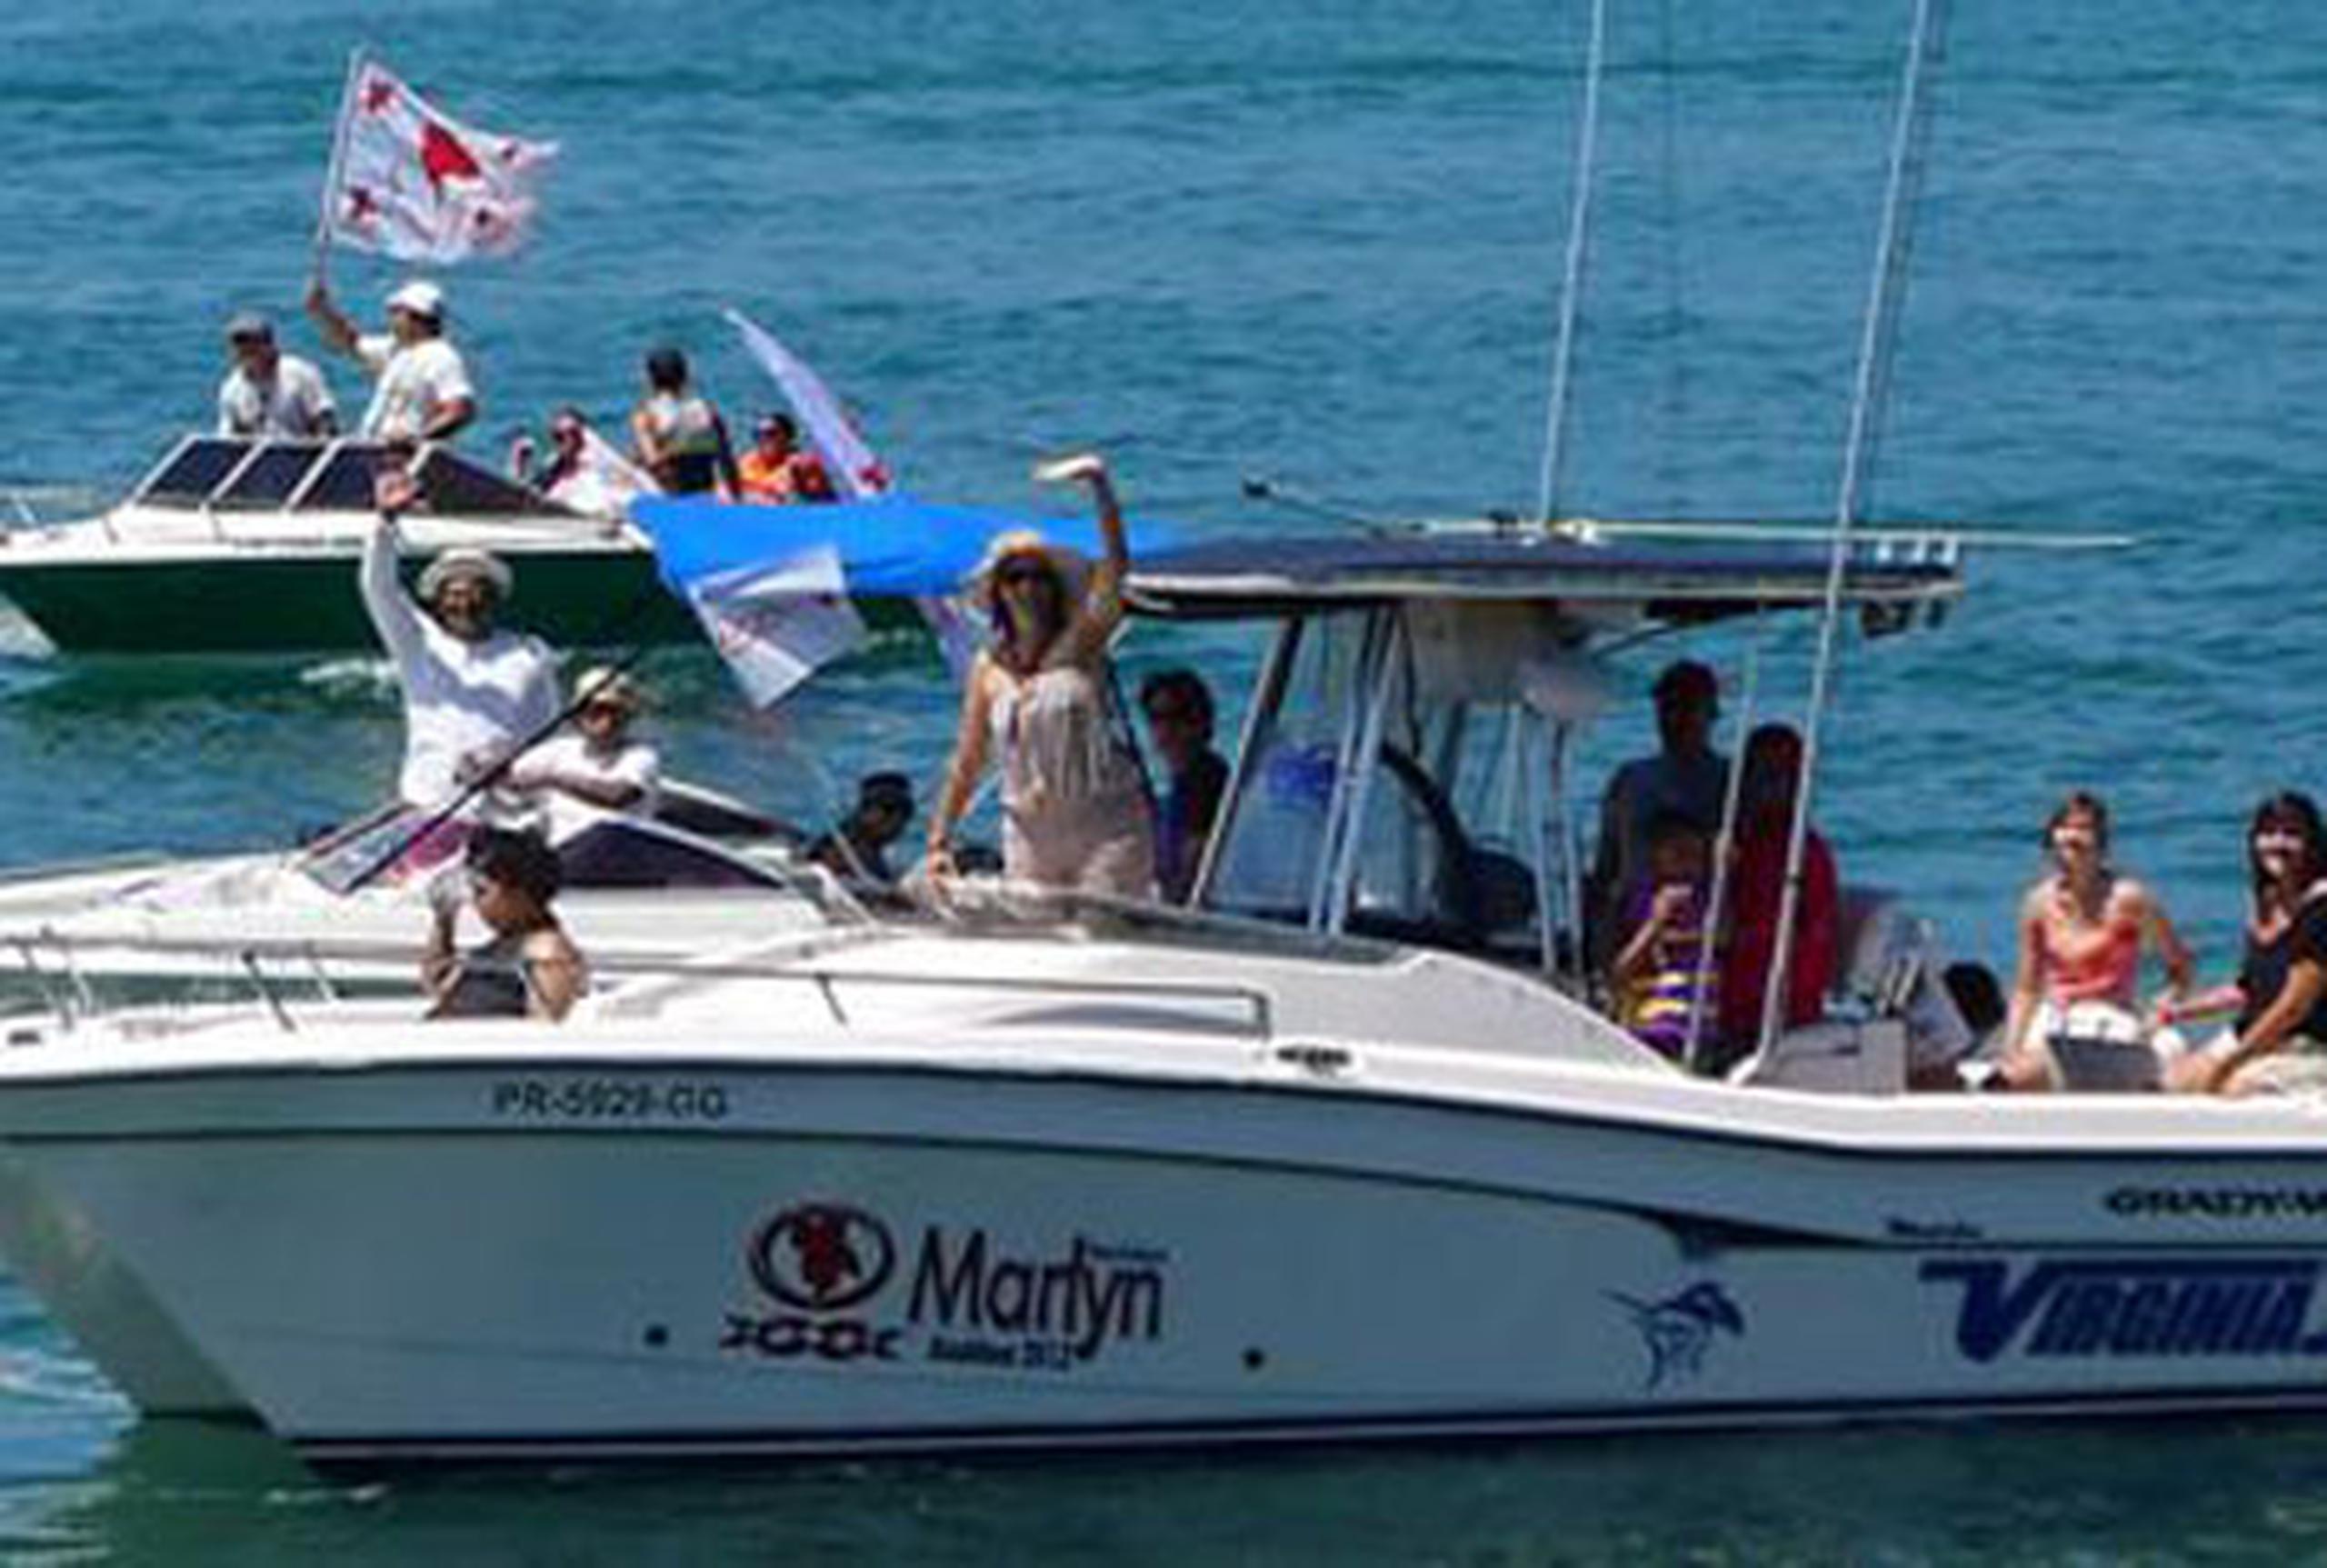 Vestida con colores claros, pamela y gafas, la candidata popular a la alcaldía de Guánica, Marilyn Rodríguez, ocupó una de las lanchas de la caravana y recorrió la costa. (Suministrada)